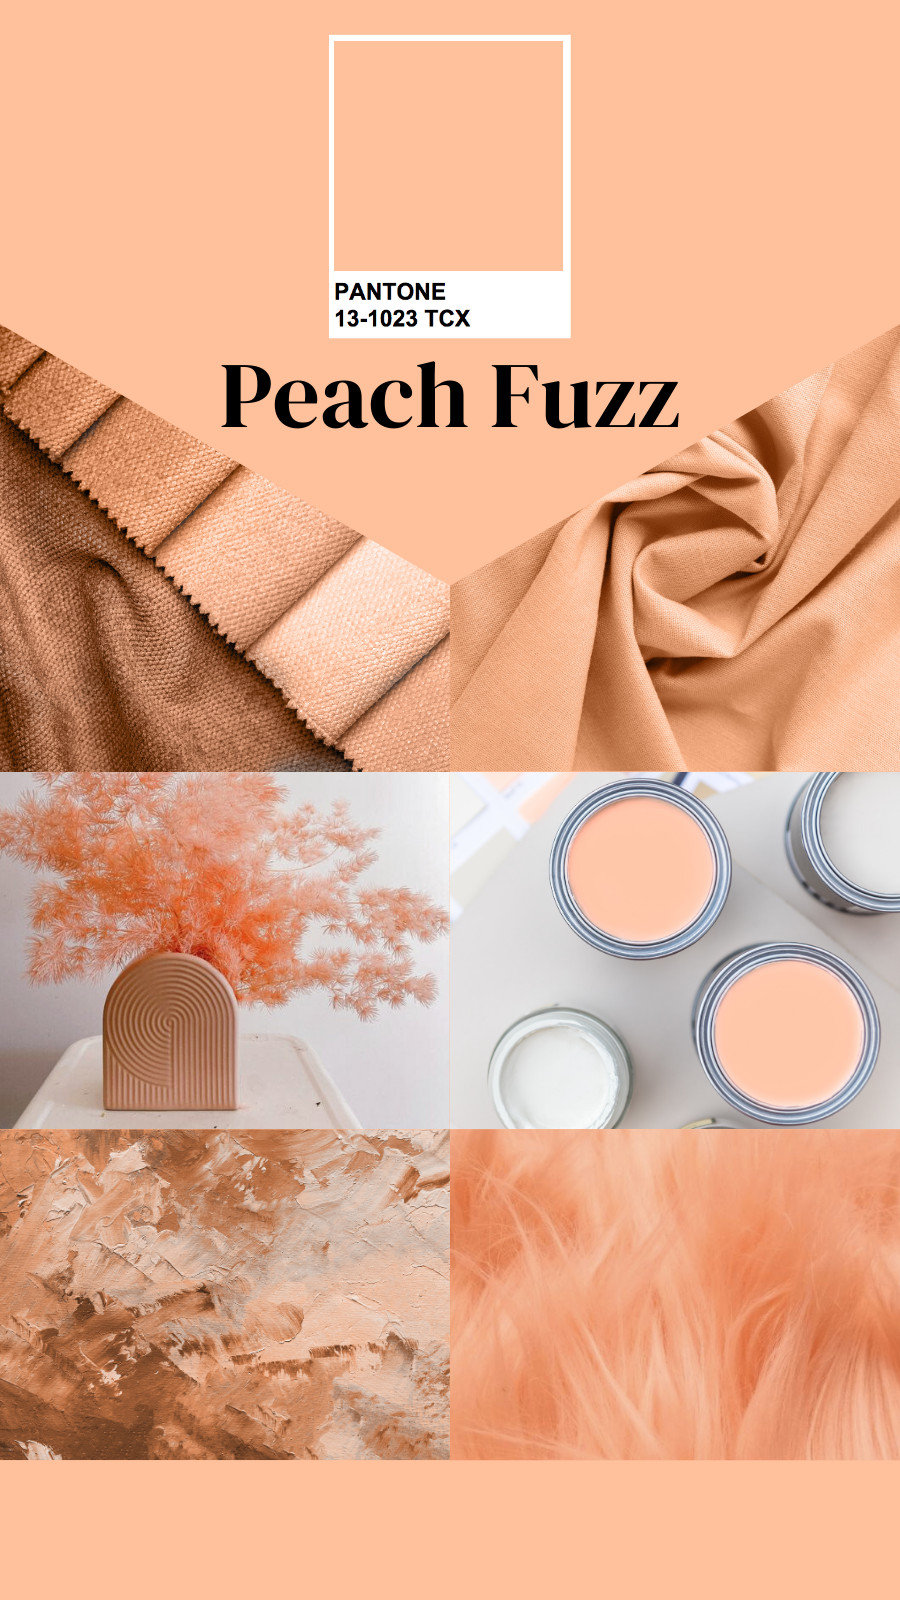 Peach Fuzz - mang lại sự ấm áp, tinh tế lan tỏa yêu thương